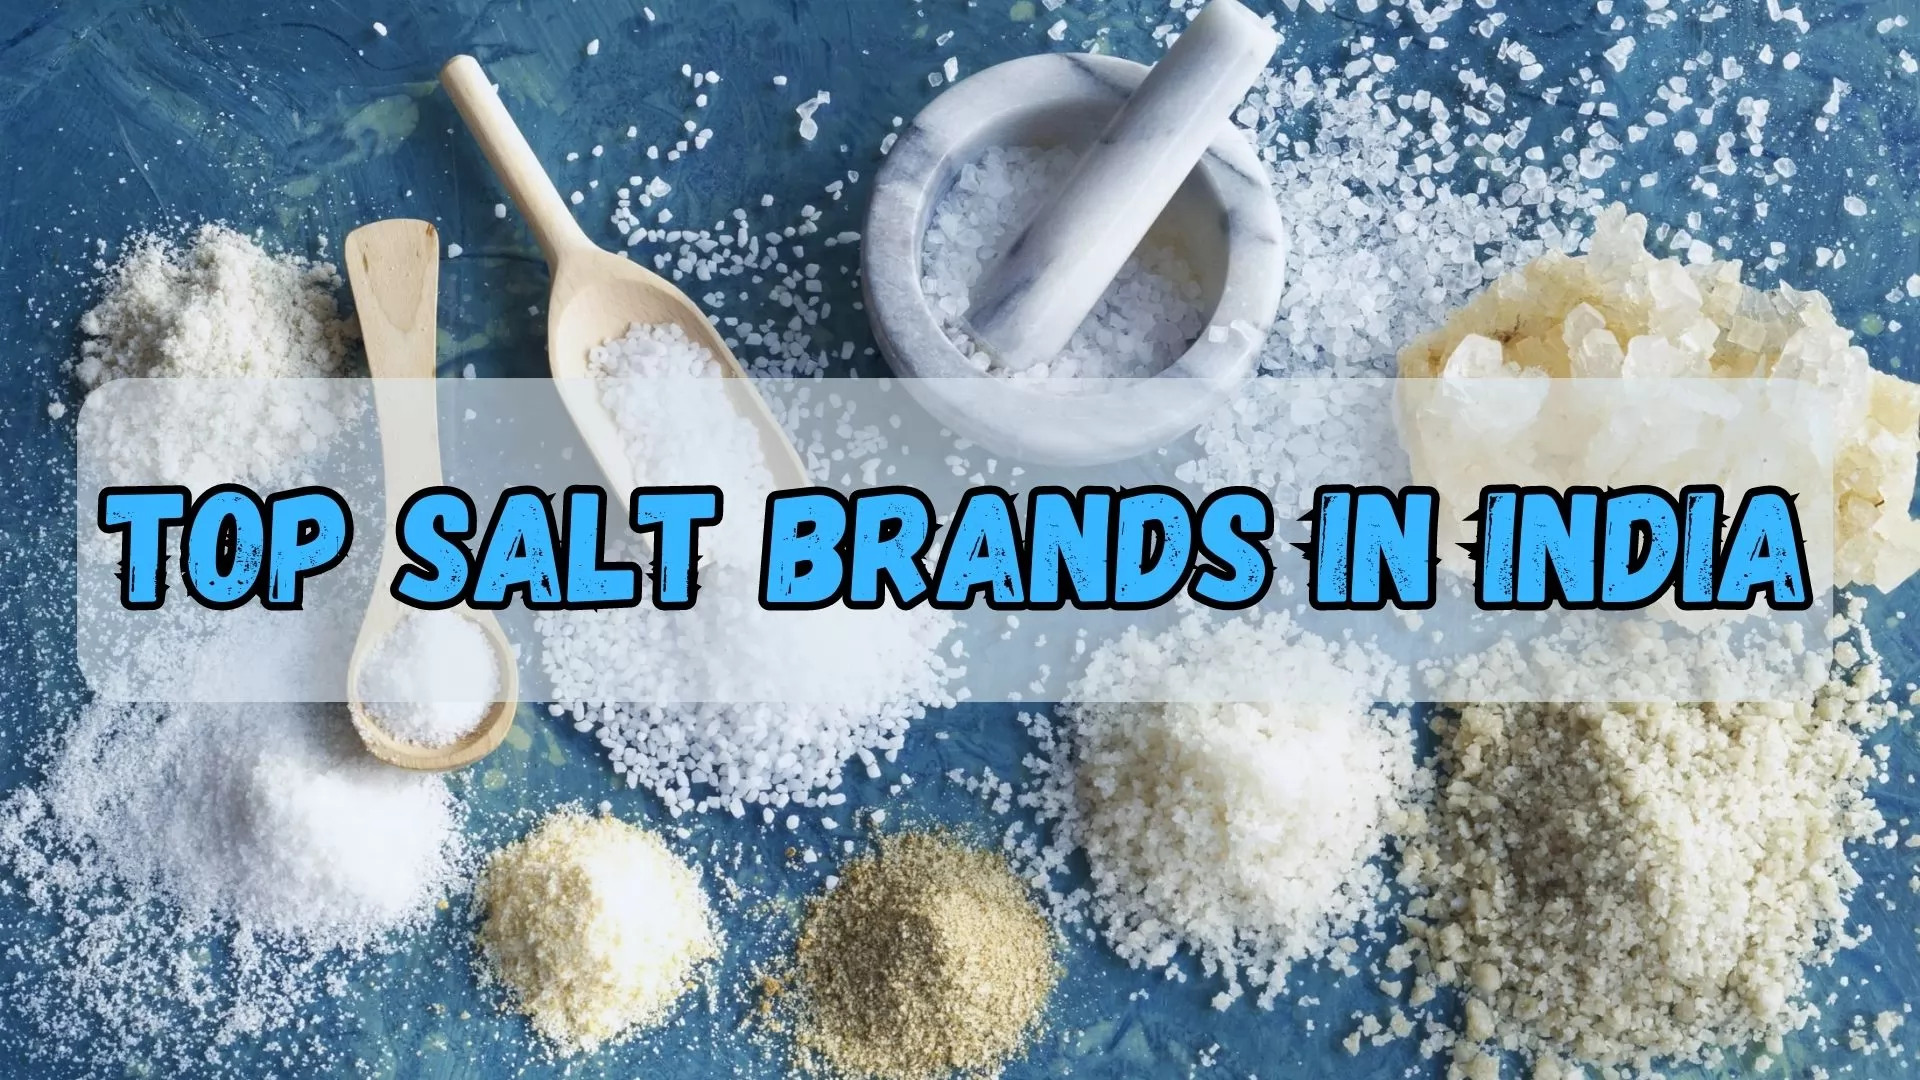 Top Salt Brands in India